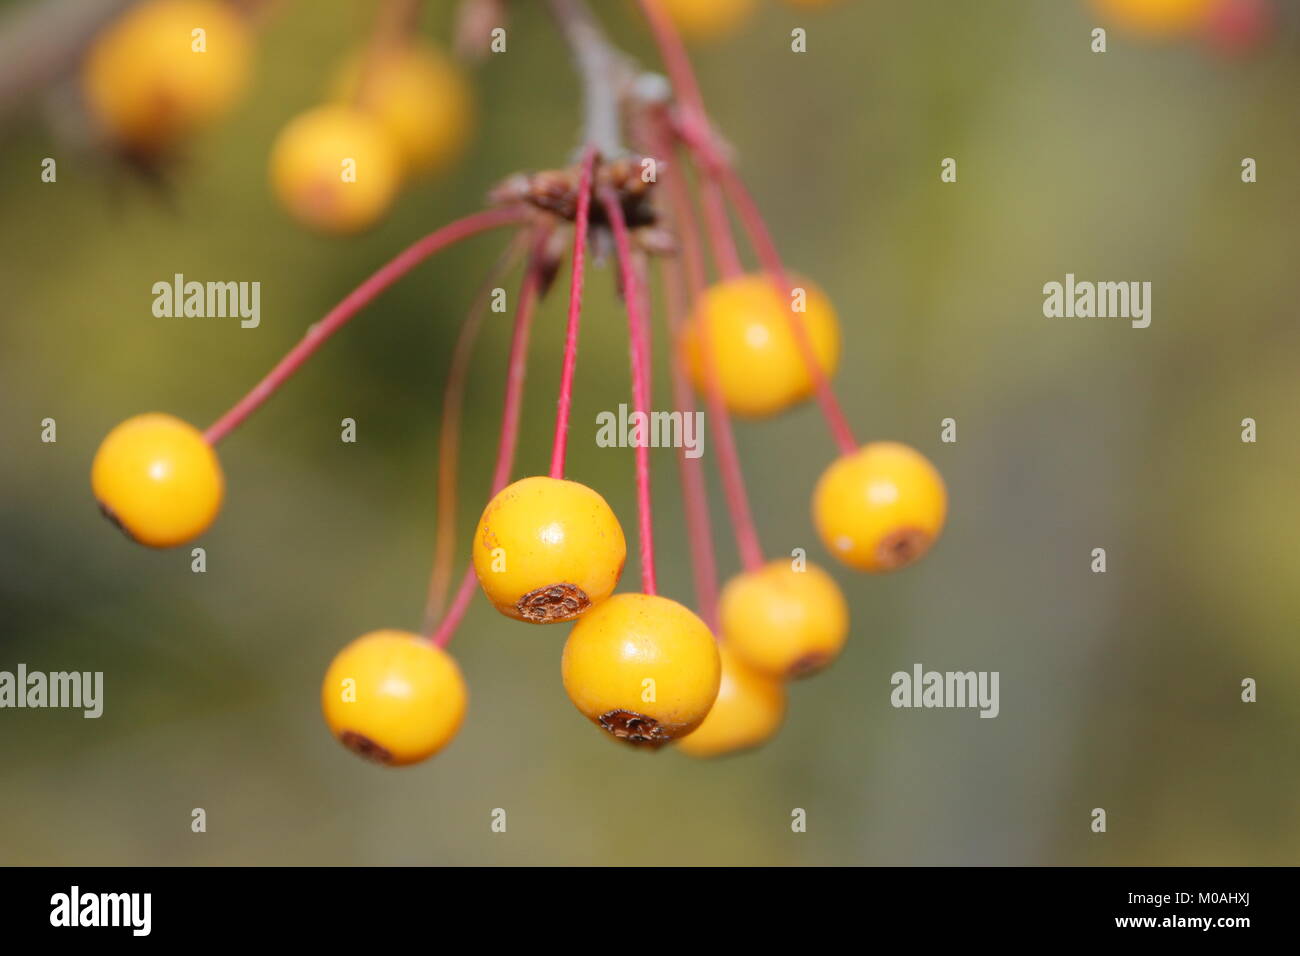 Las frutas doradas de Malus transitoria, también llamado Lluvia de Oro, en un jardín inglés, otoño/invierno (3 de diciembre), REINO UNIDO Foto de stock